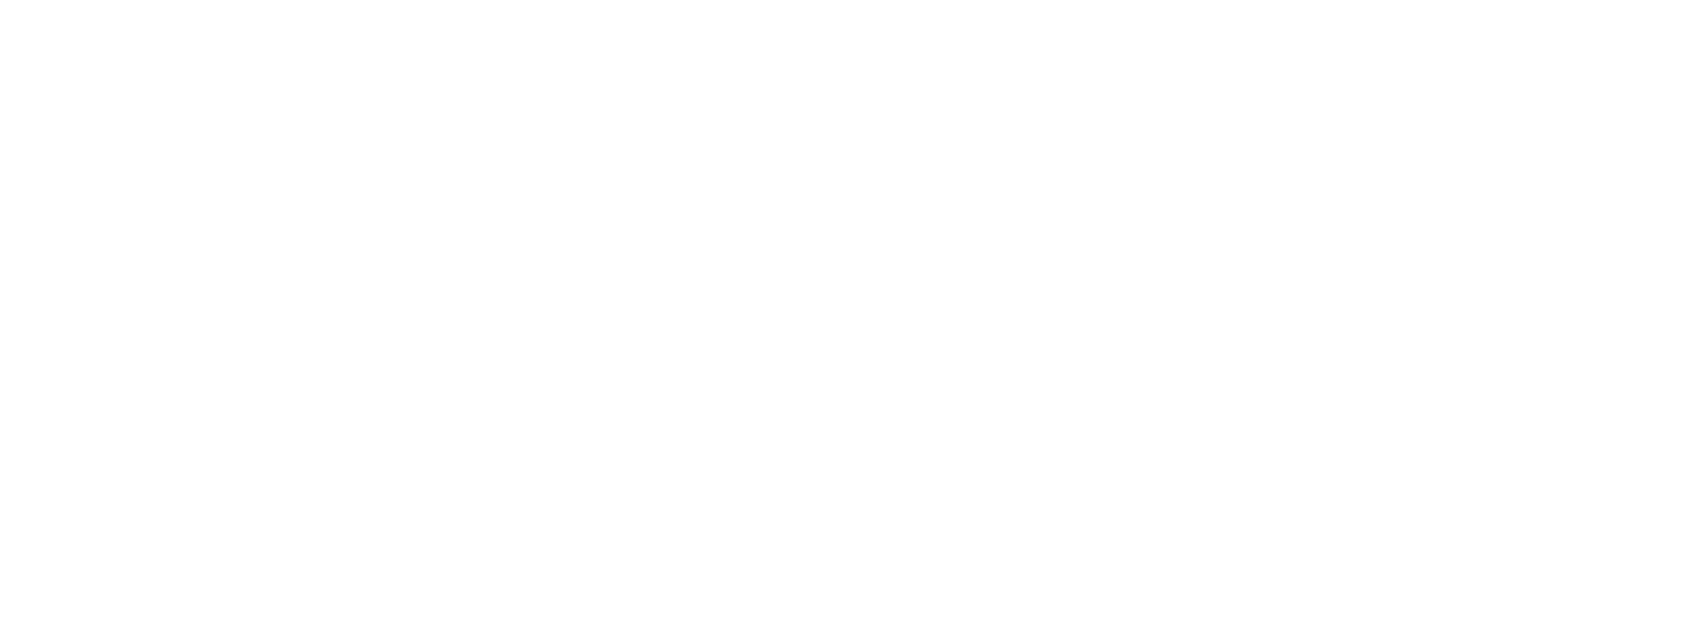 Crewe Advisors